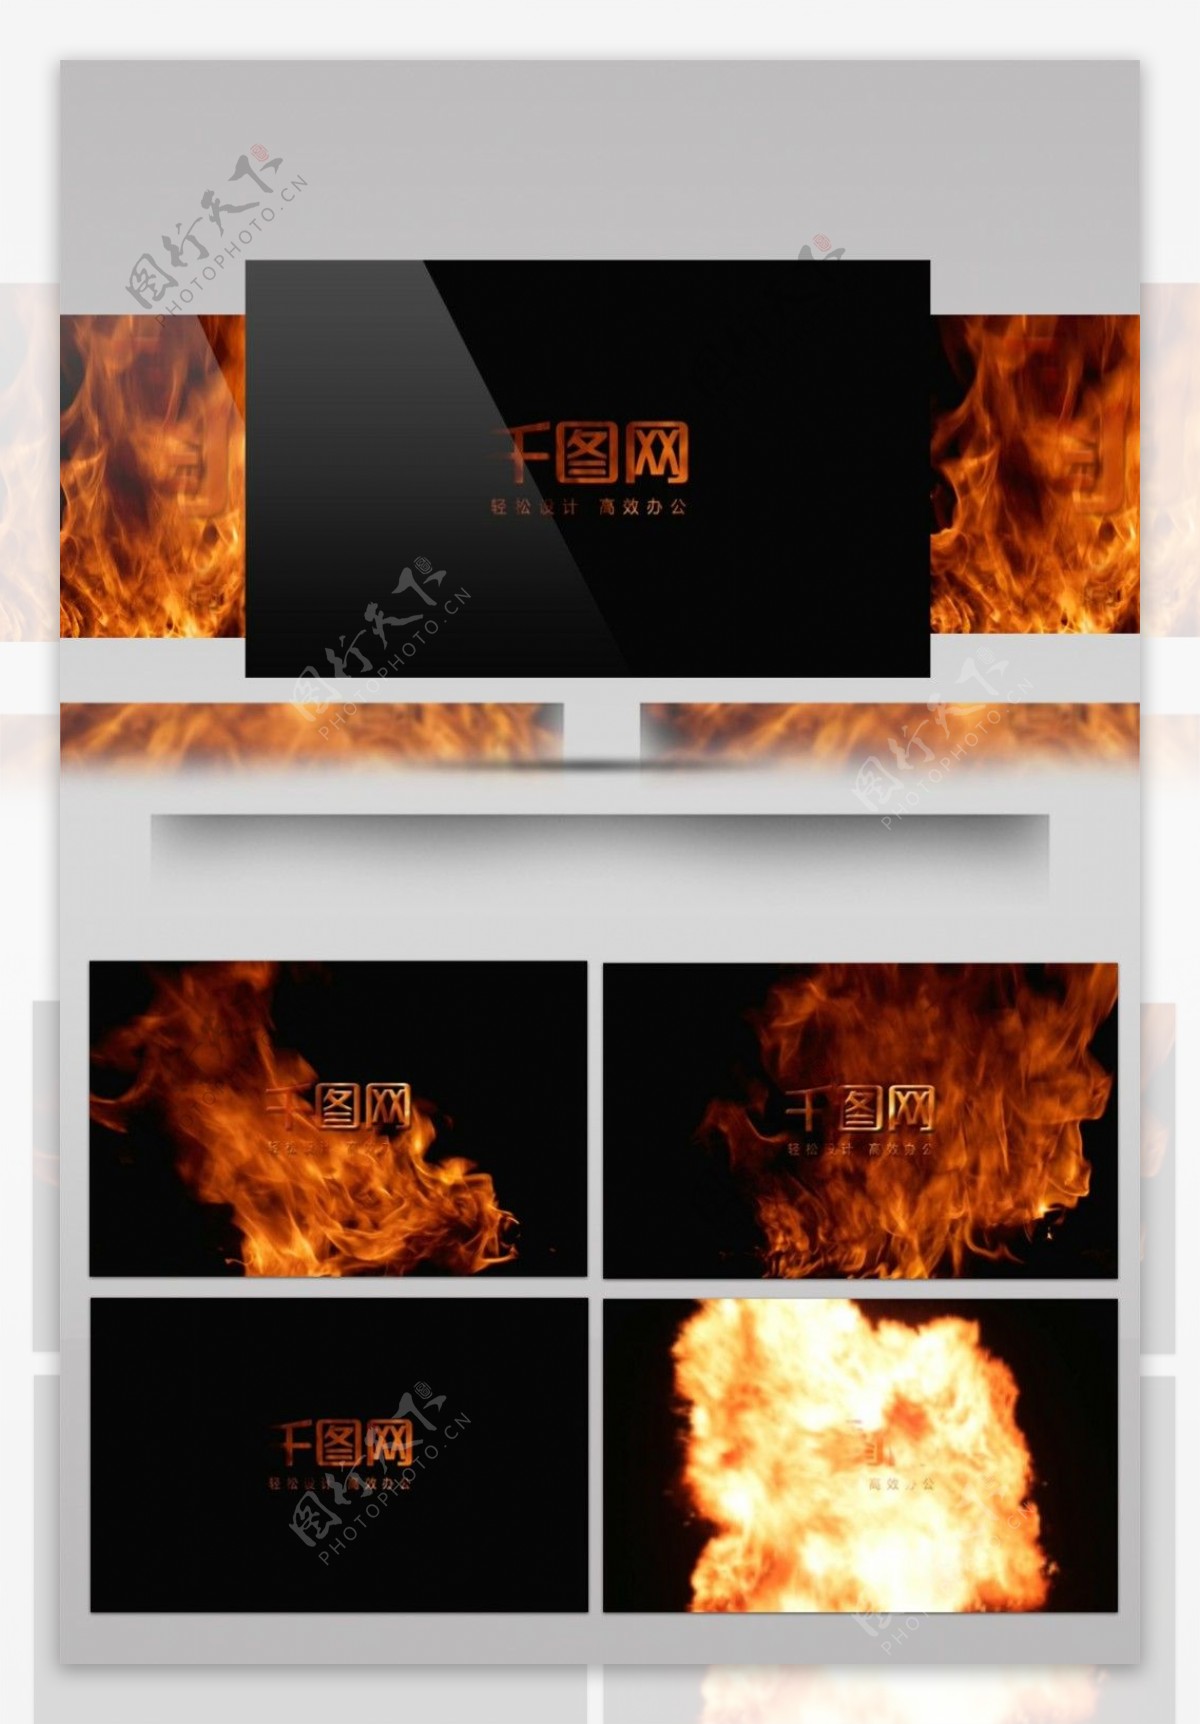 5火焰中的标志特效素材文件夹